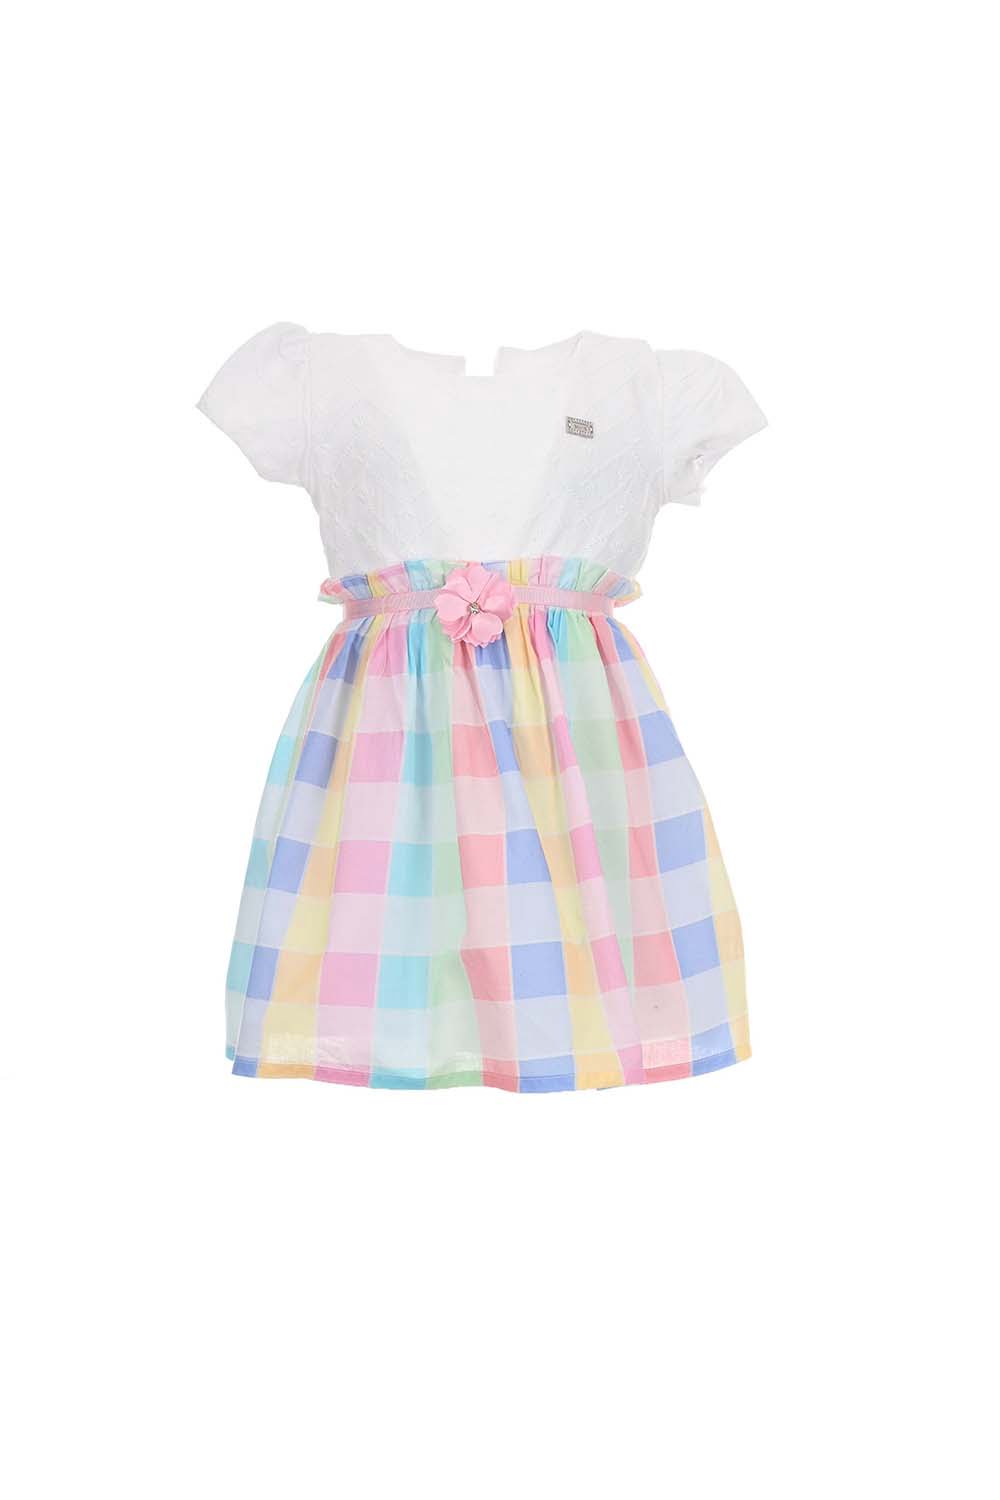 Παιδικό Φόρεμα Για Κορίτσι EBITA 242512 Πολύχρωμο